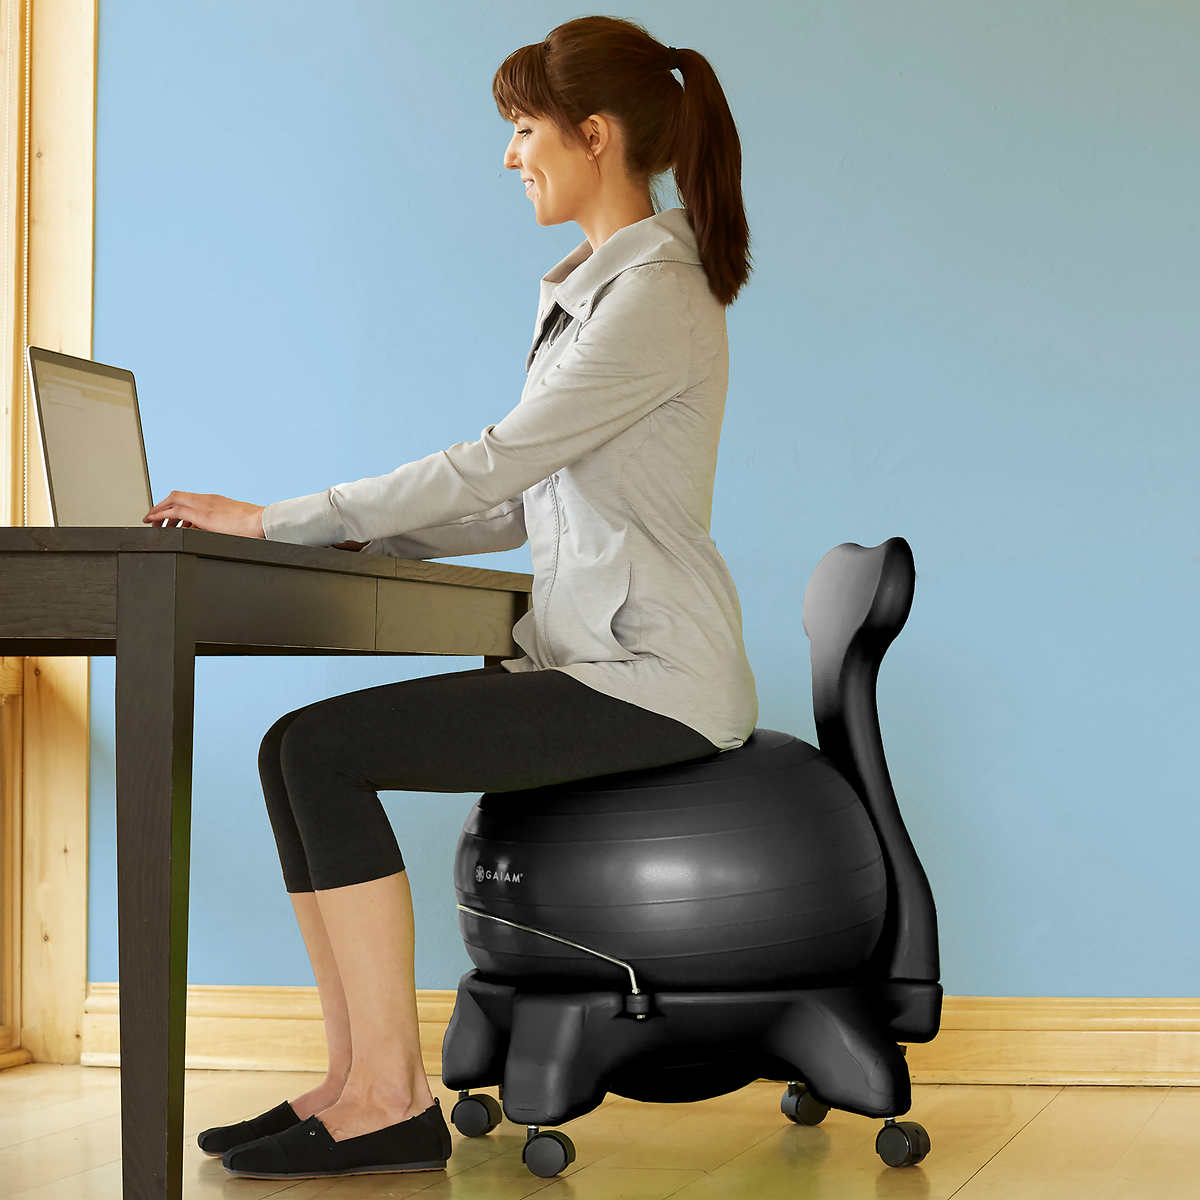 Gaiam Balance Ball Chair | Costco